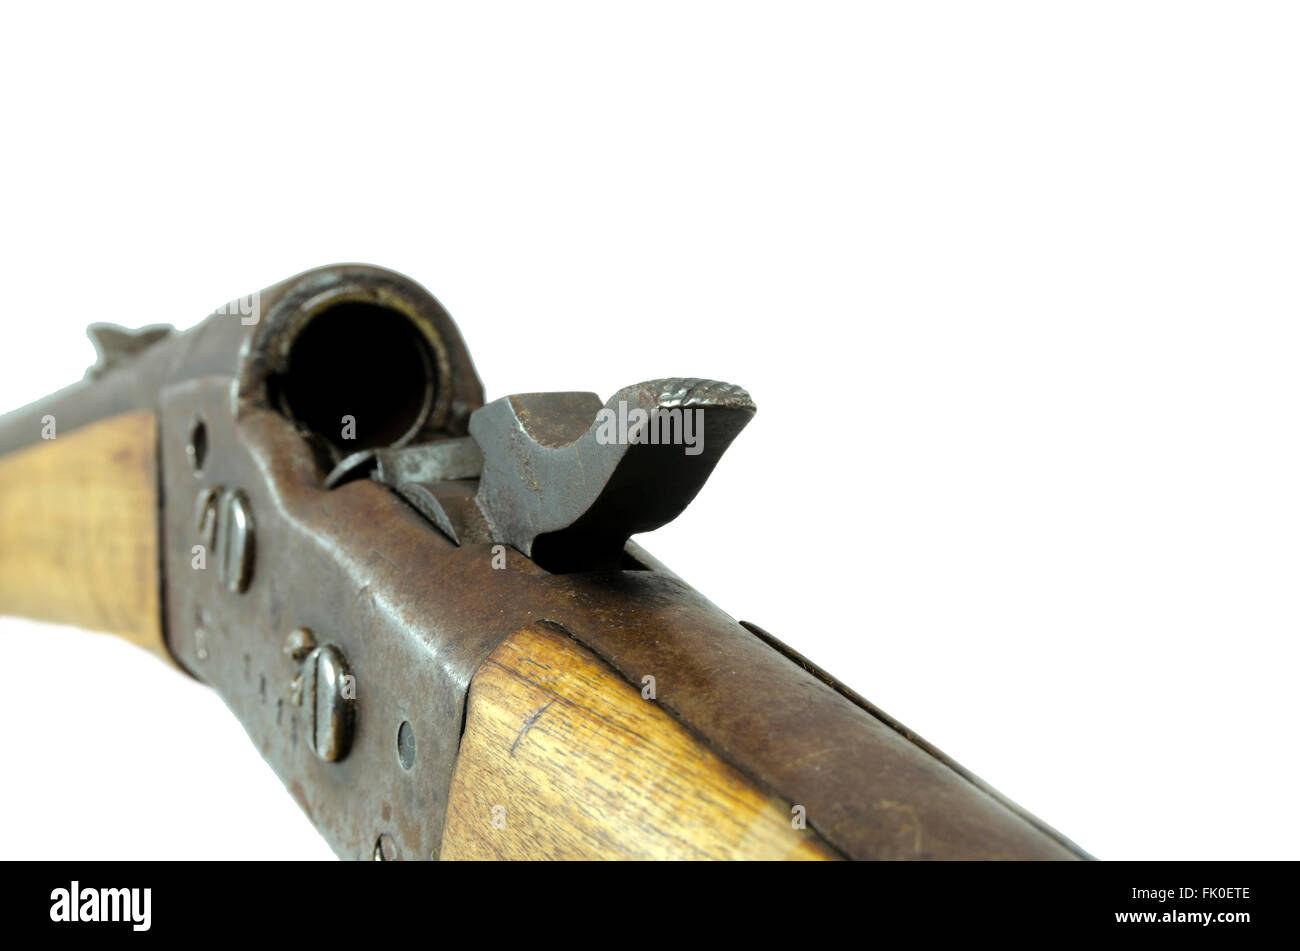 Foto de Soviética Sniper Com O Rifle e mais fotos de stock de 2015 - 2015,  Adulto, Antiga União Soviética - iStock